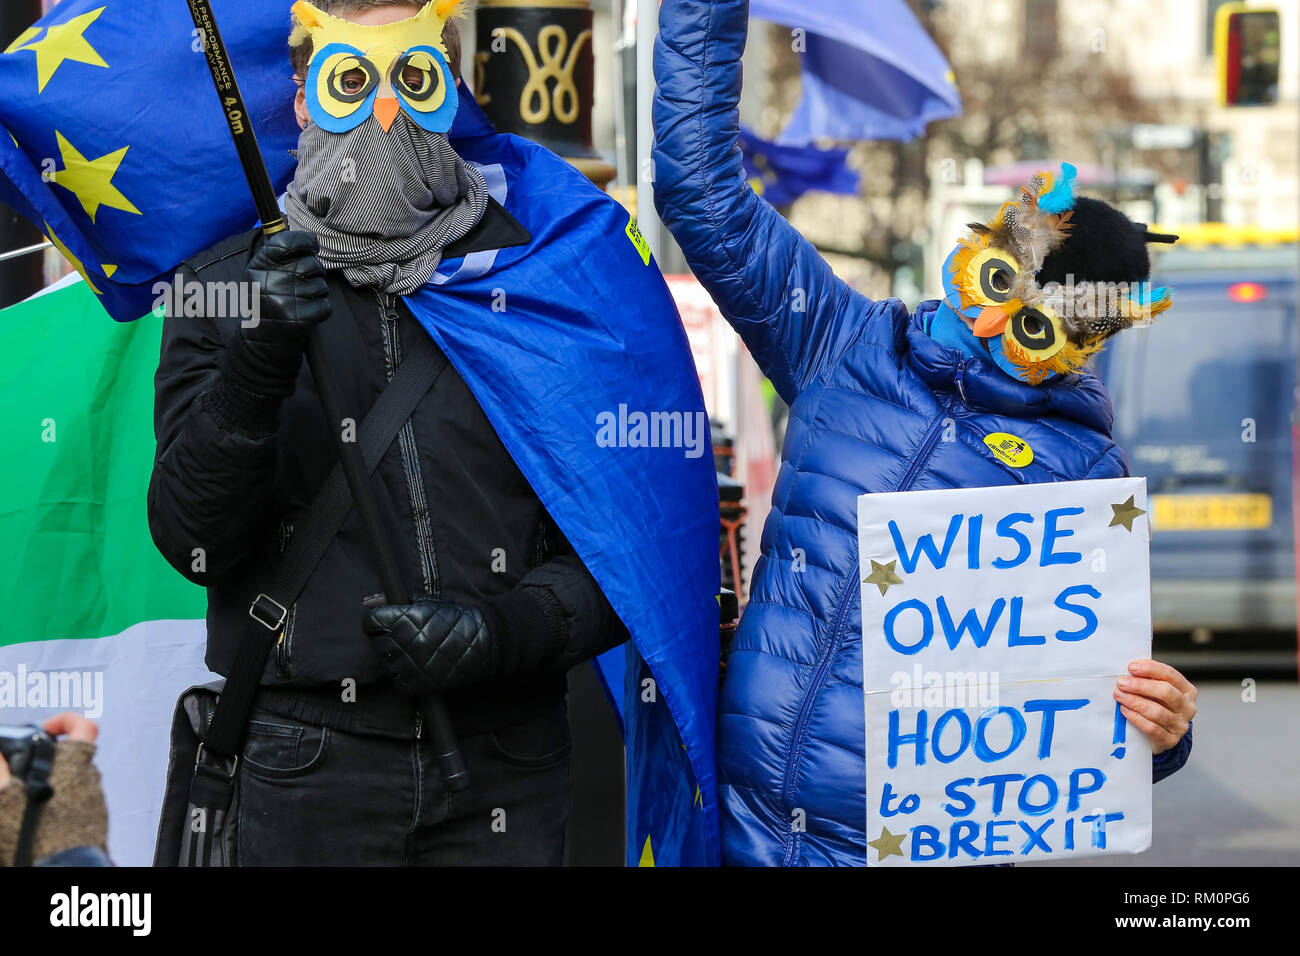 Anti-Brexit des manifestants sont vus avec des pancartes et des masques anti-Brexit lors d'une manifestation devant les Chambres du Parlement à Londres. Banque D'Images